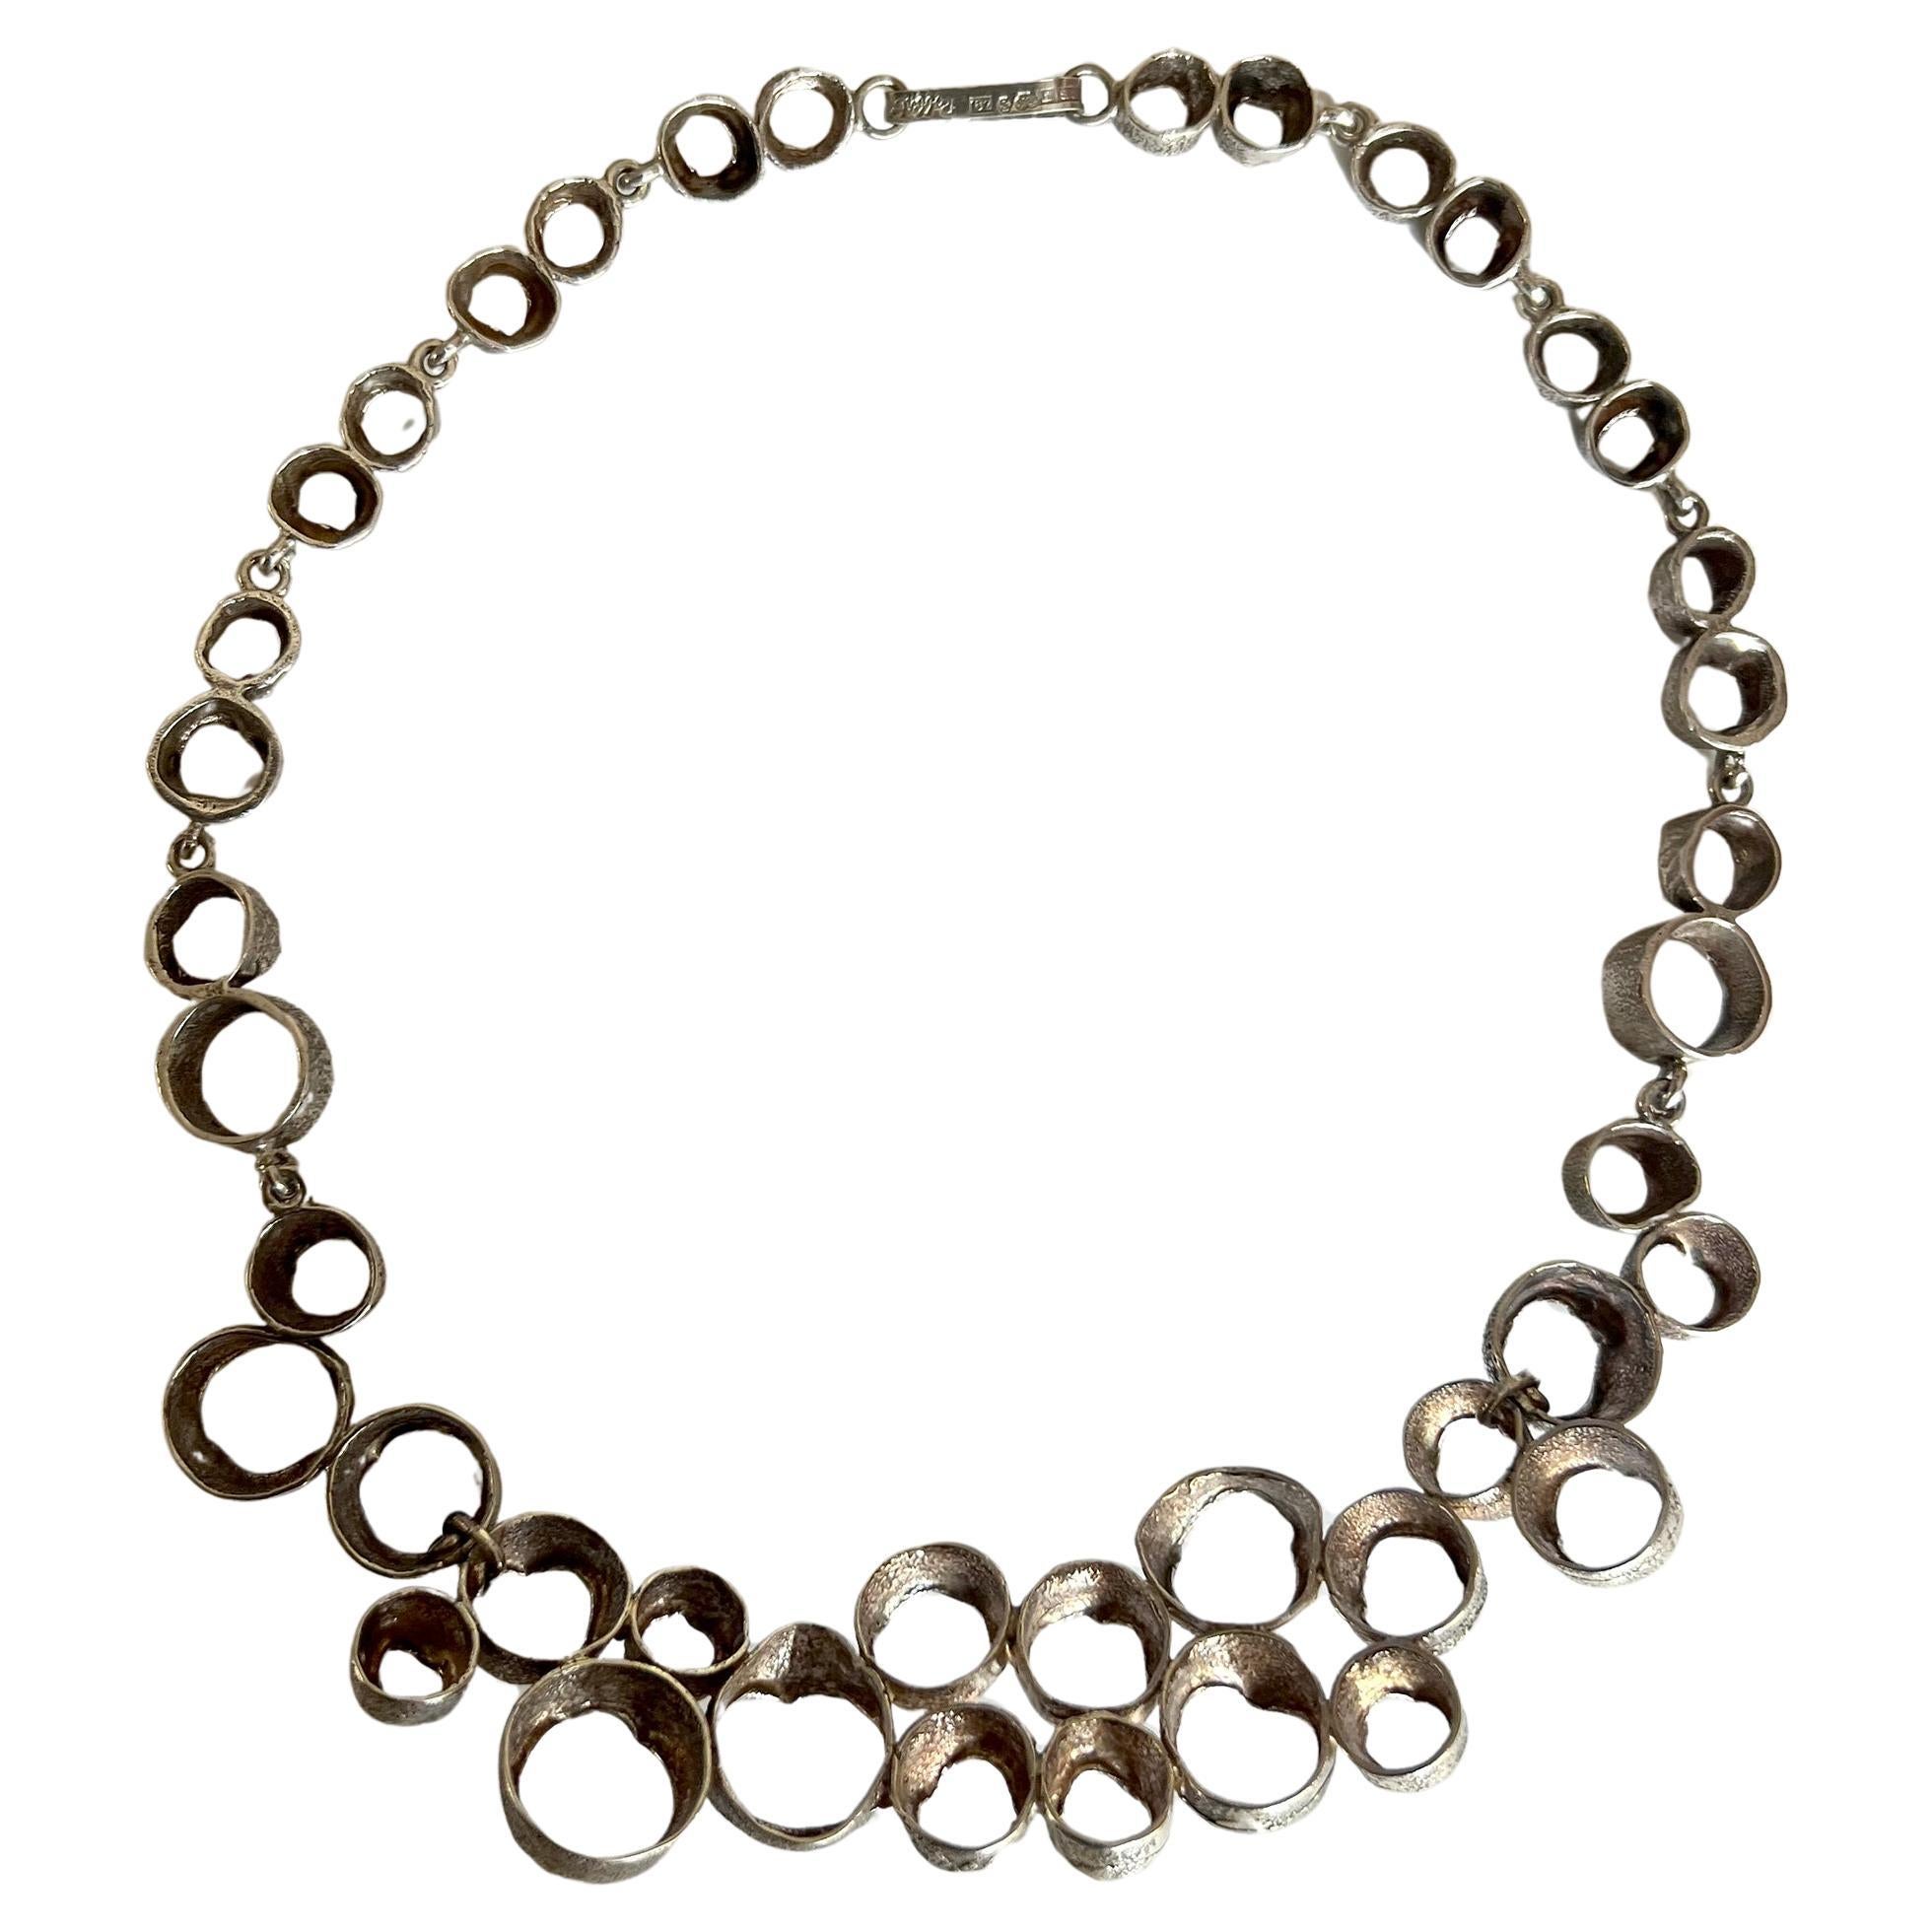 Schwedische modernistische Halskette aus Sterlingsilber von Eric Scott Robbert, 1970er Jahre.  Die Halskette hat eine tragbare Halslänge von 16